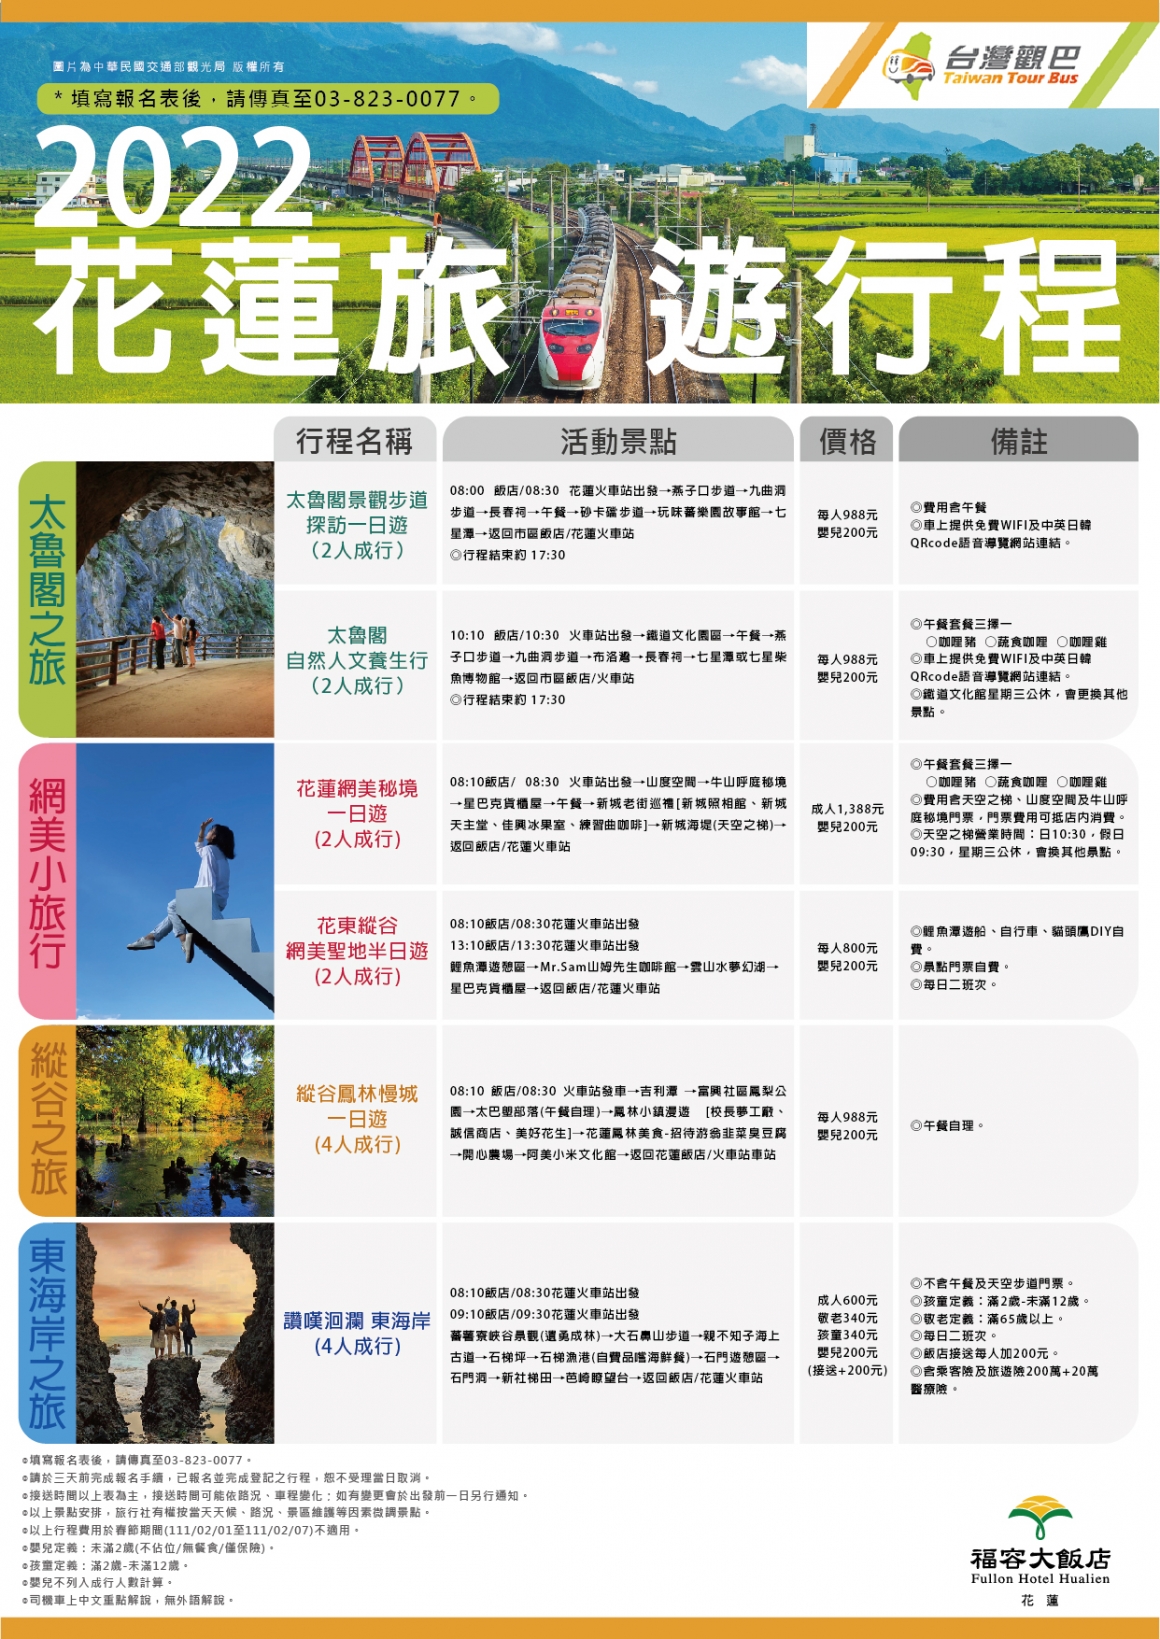 2022 台灣觀巴旅遊行程－0329-01